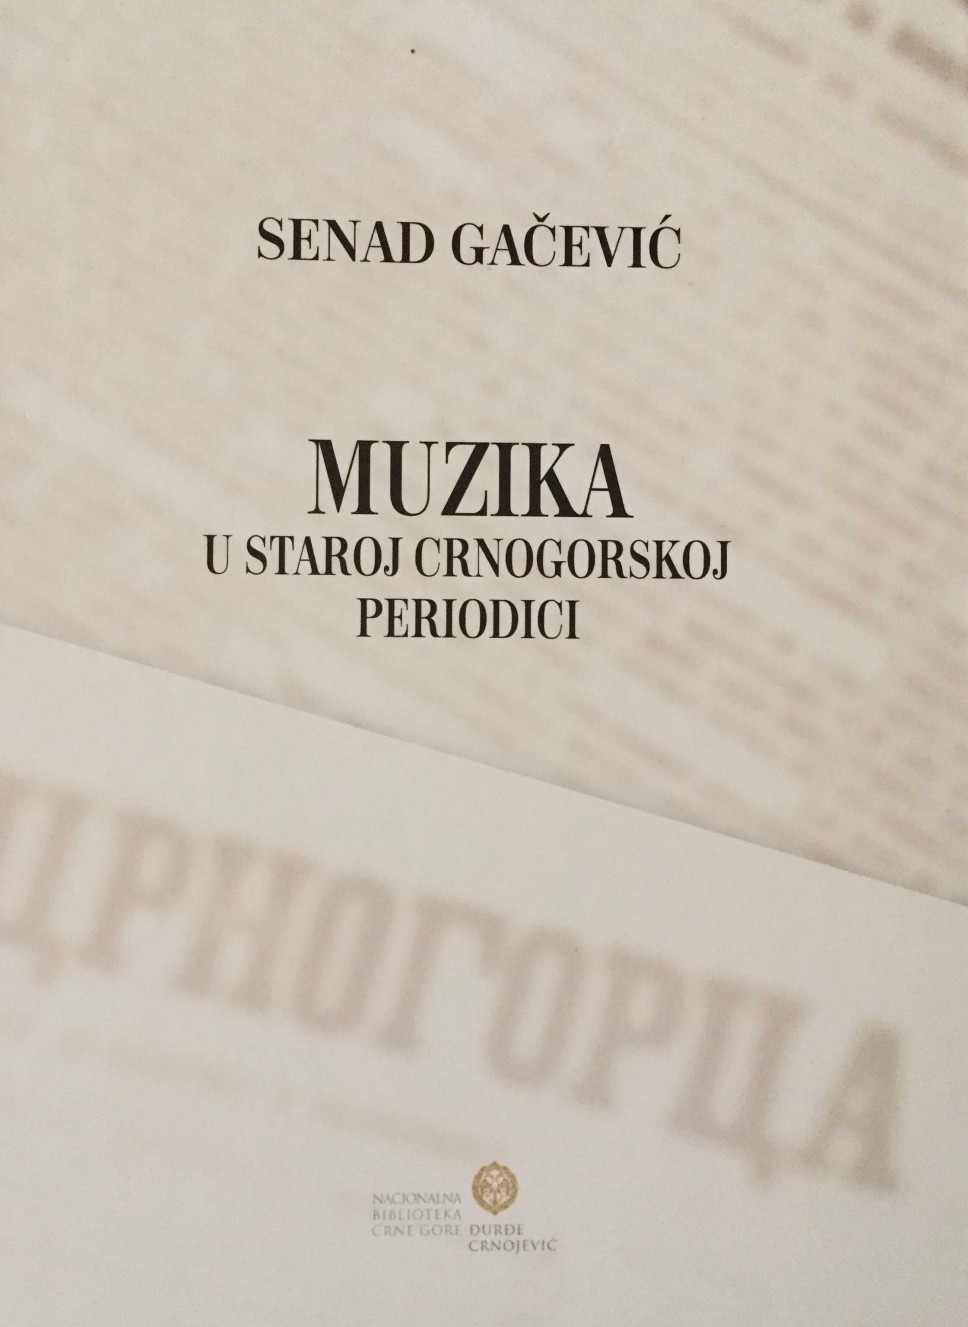 Bibliografija “Muzika u staroj crnogorskoj periodici“ (1871 - 1943)